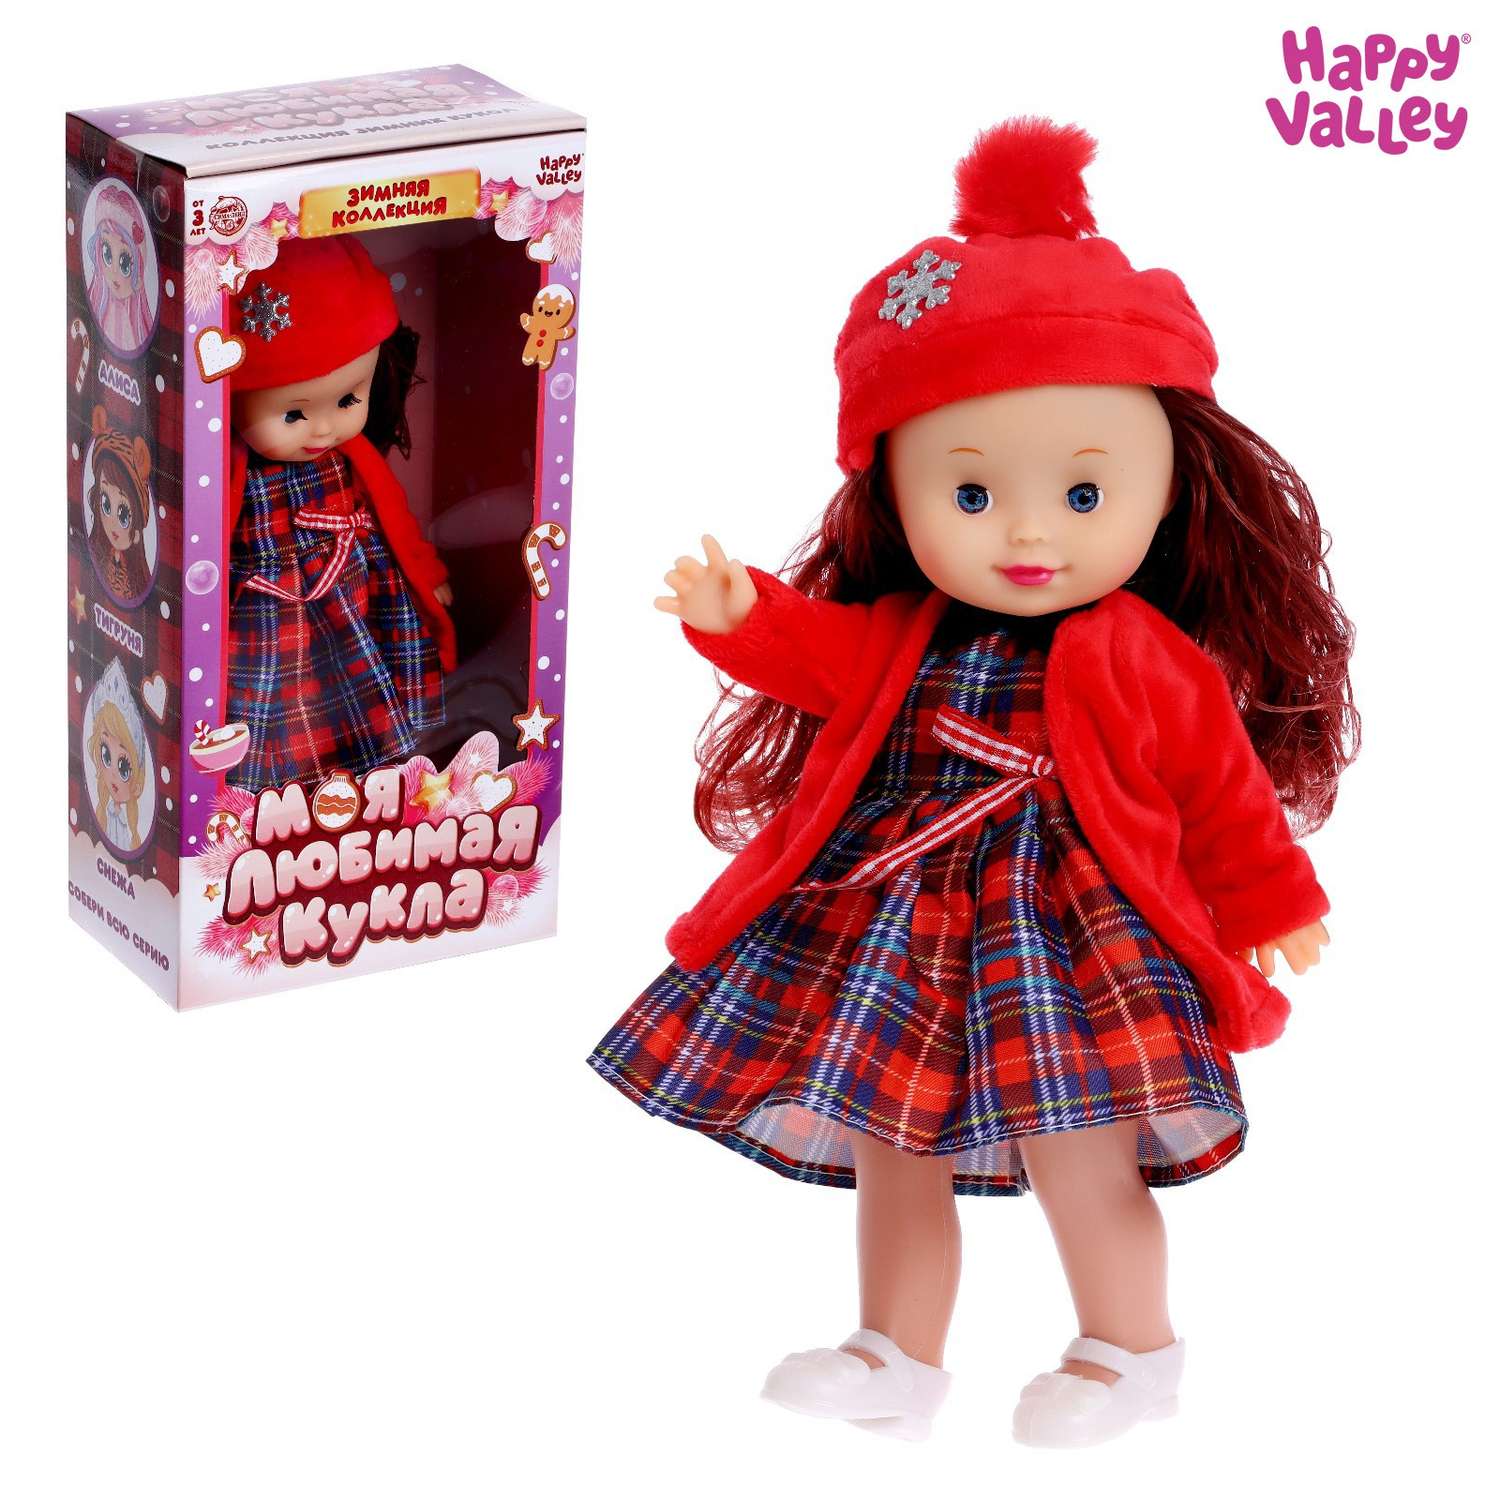 Кукла Happy Valley классическая «Моя любимая кукла. Мишель» с гирляндой 6911842 - фото 1